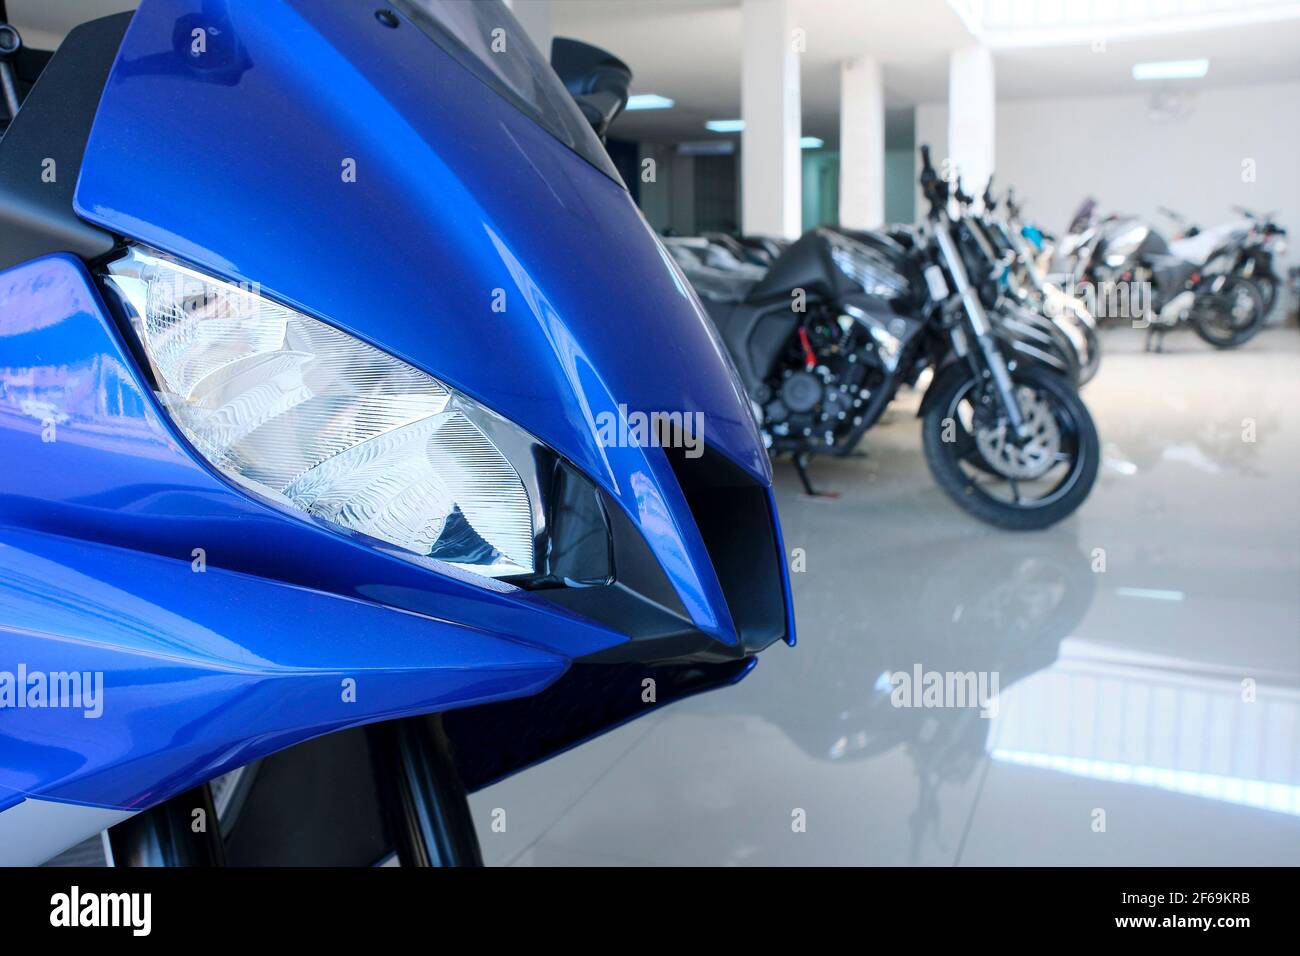 Yamaha Bike Stockfotos und -bilder Kaufen - Alamy